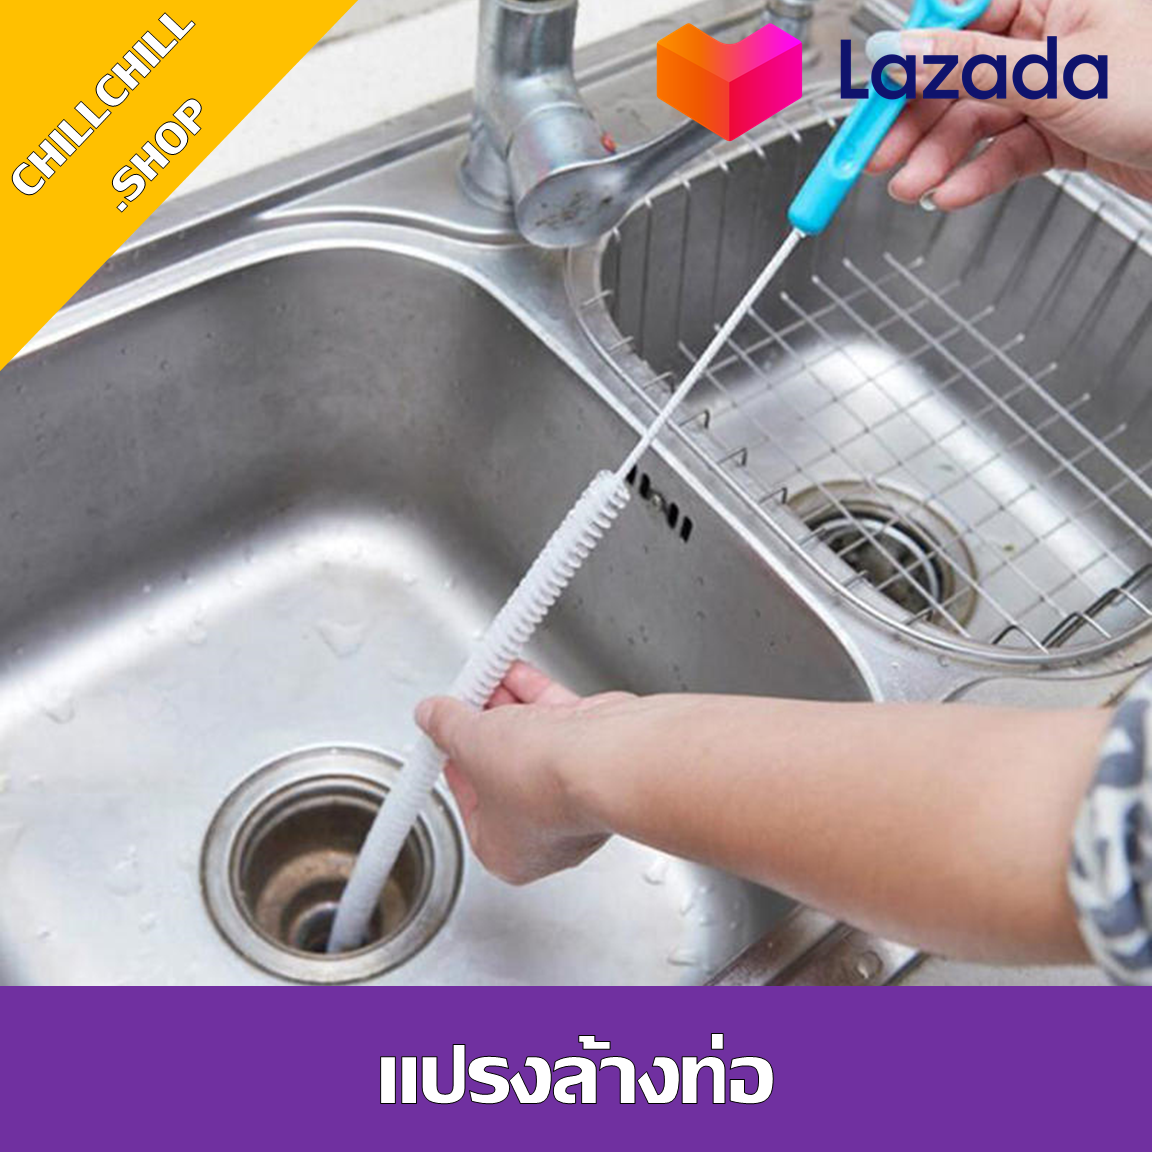 แปรงทำความสะอาดท่อระบายน้ำ งอได้ คละสีด้าม ทำความสะอาดอ่างล้างหน้า อ่างอาบน้ำ แปรงยาว แปรงล้างท่อ